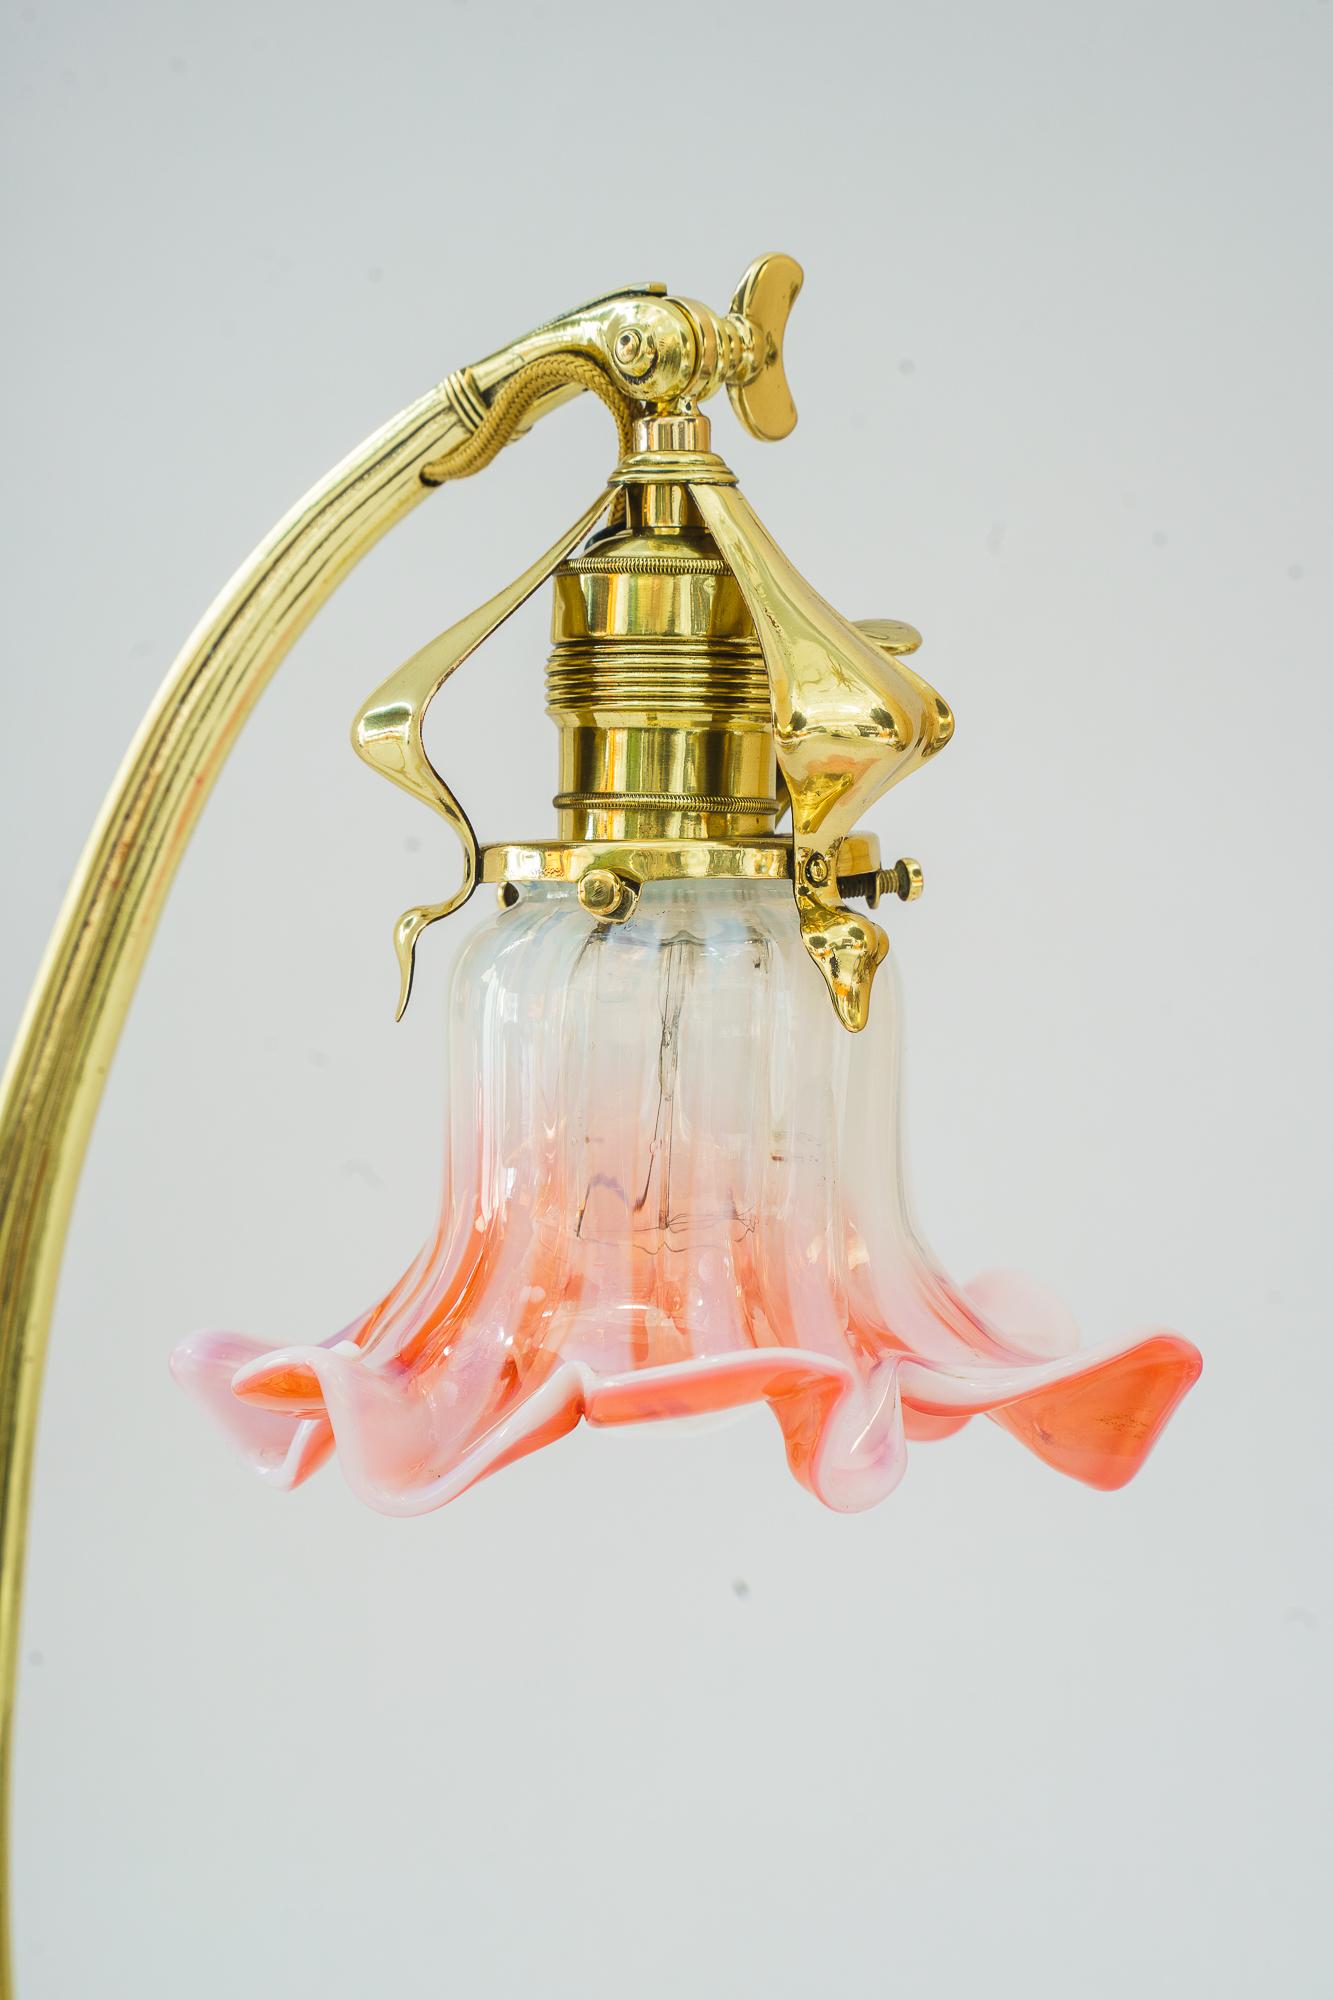 Sviweling Art-Déco-Tischlampe mit originalem Opalglasschirm Vienna 1920er Jahre
Messing poliert und emailliert
Originaler alter Opalglas-Schirm